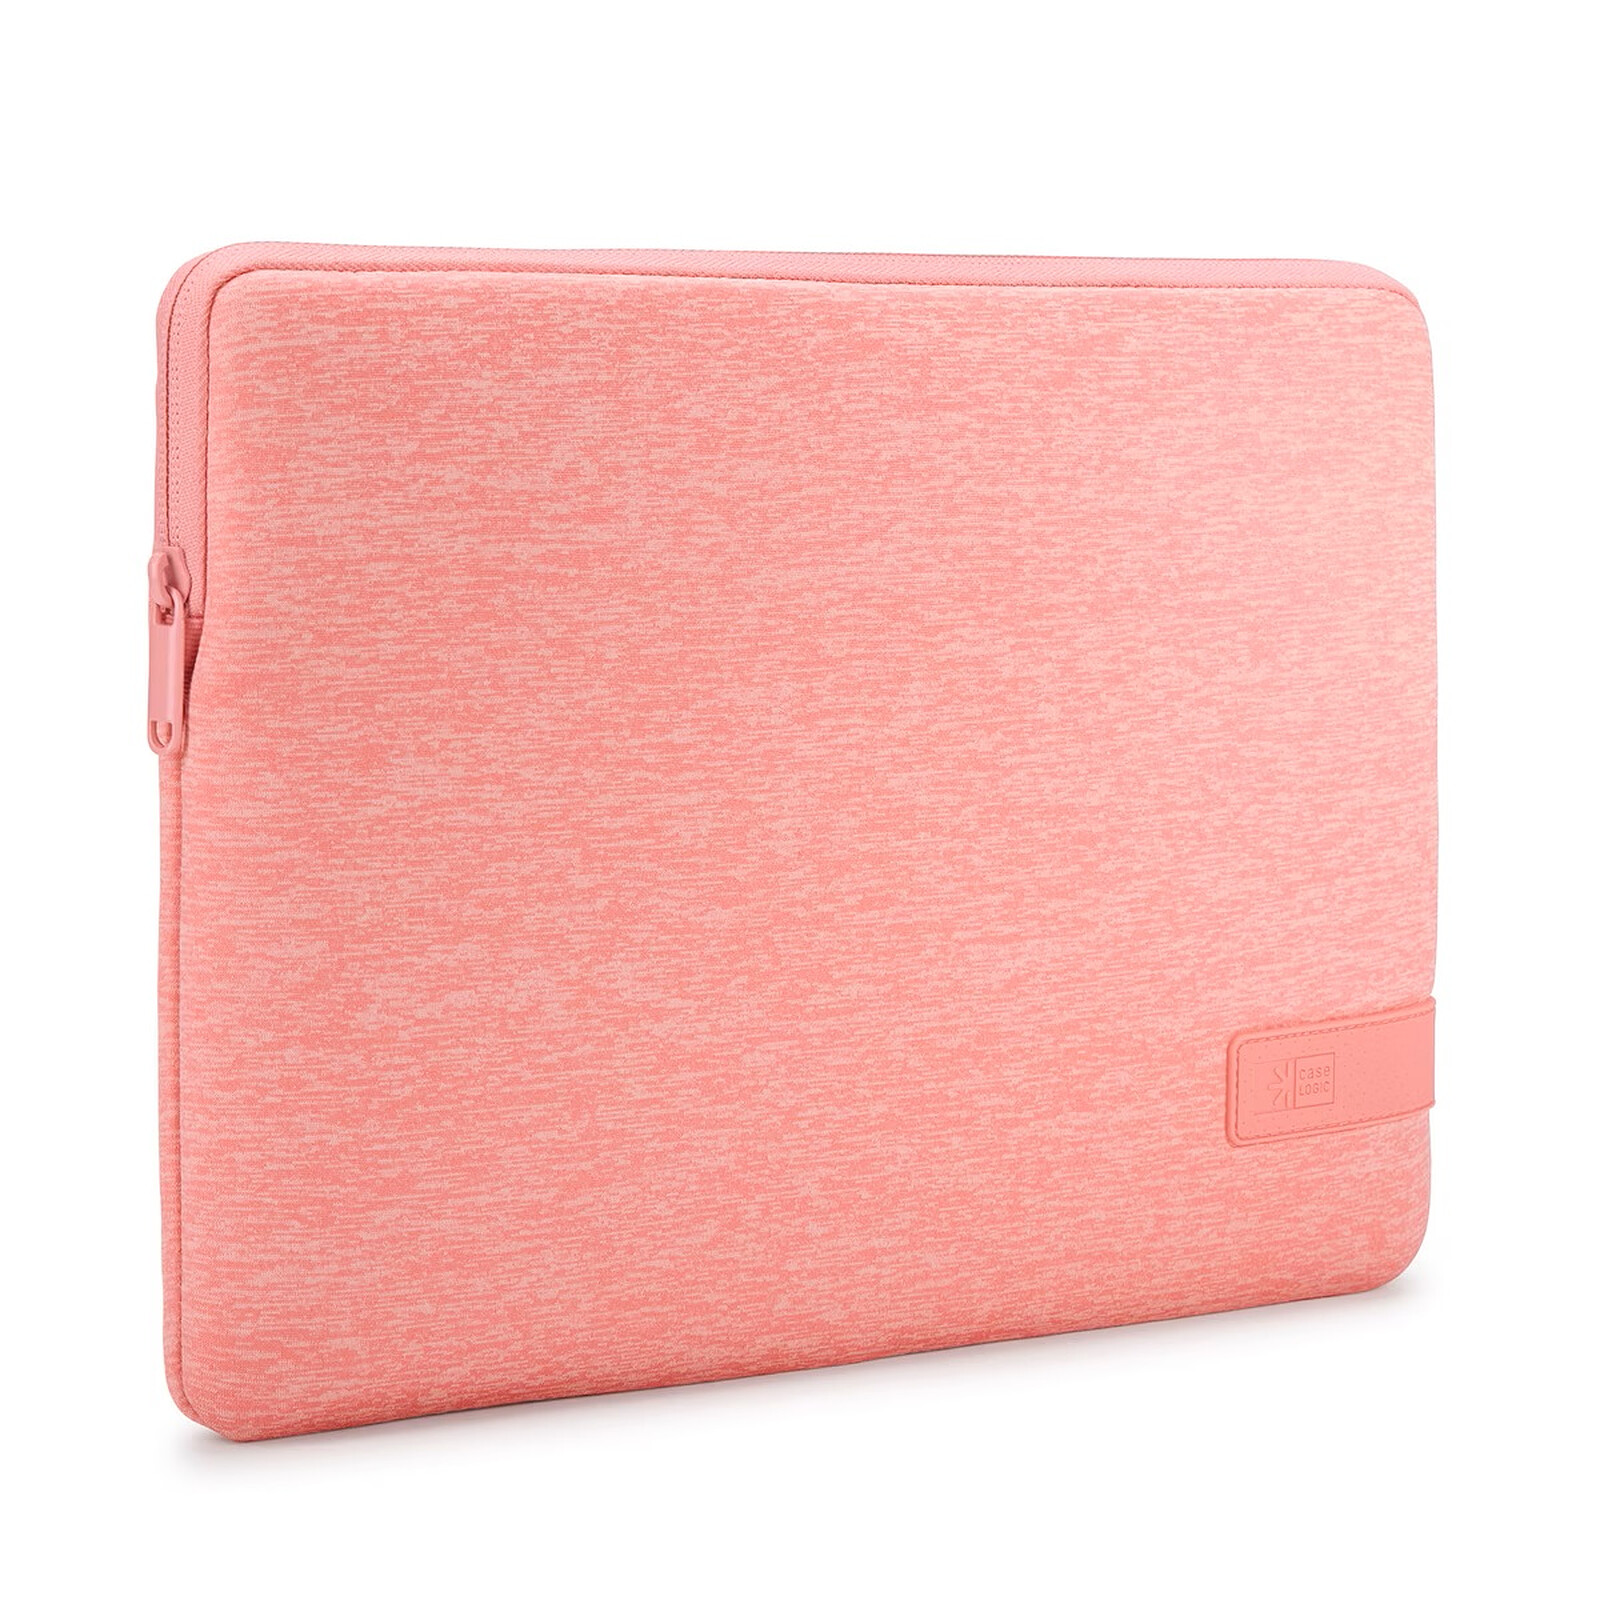 Laptop Sleeve Carry Case Bag Shockproof Protective Handbag 14-15.6 Inch Pink  | eBay